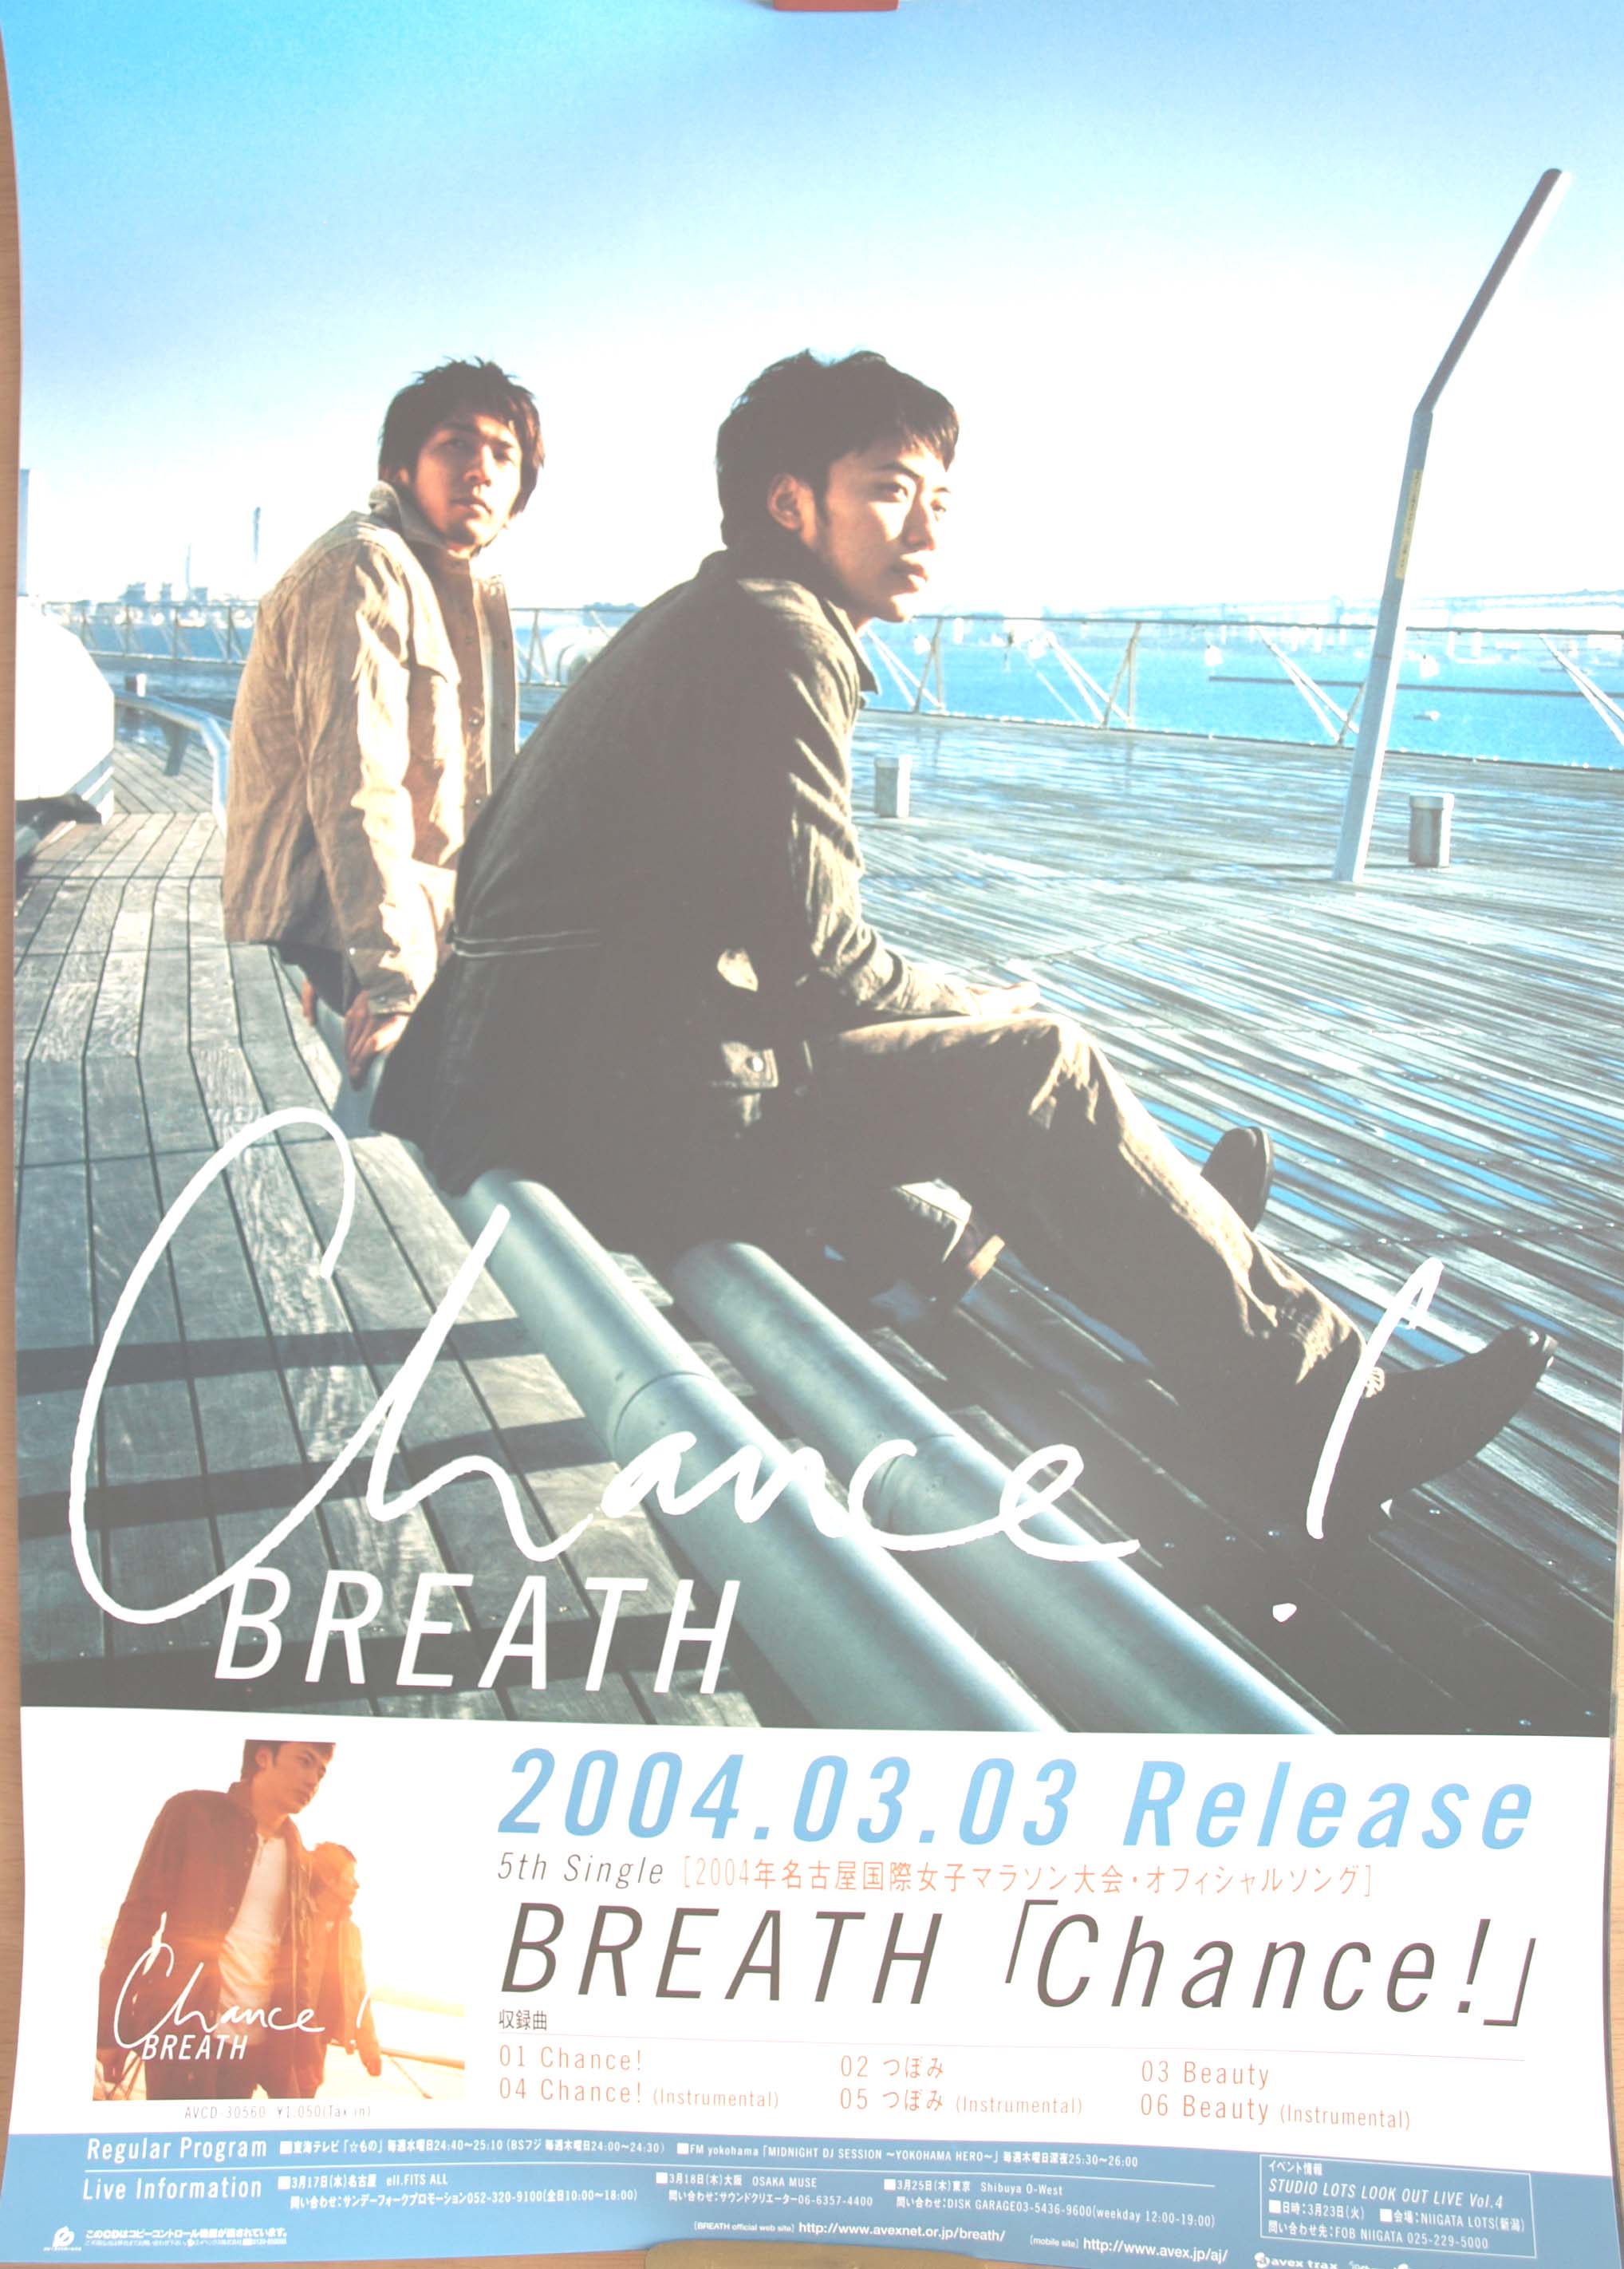 BREATH 「Chance!」のポスター